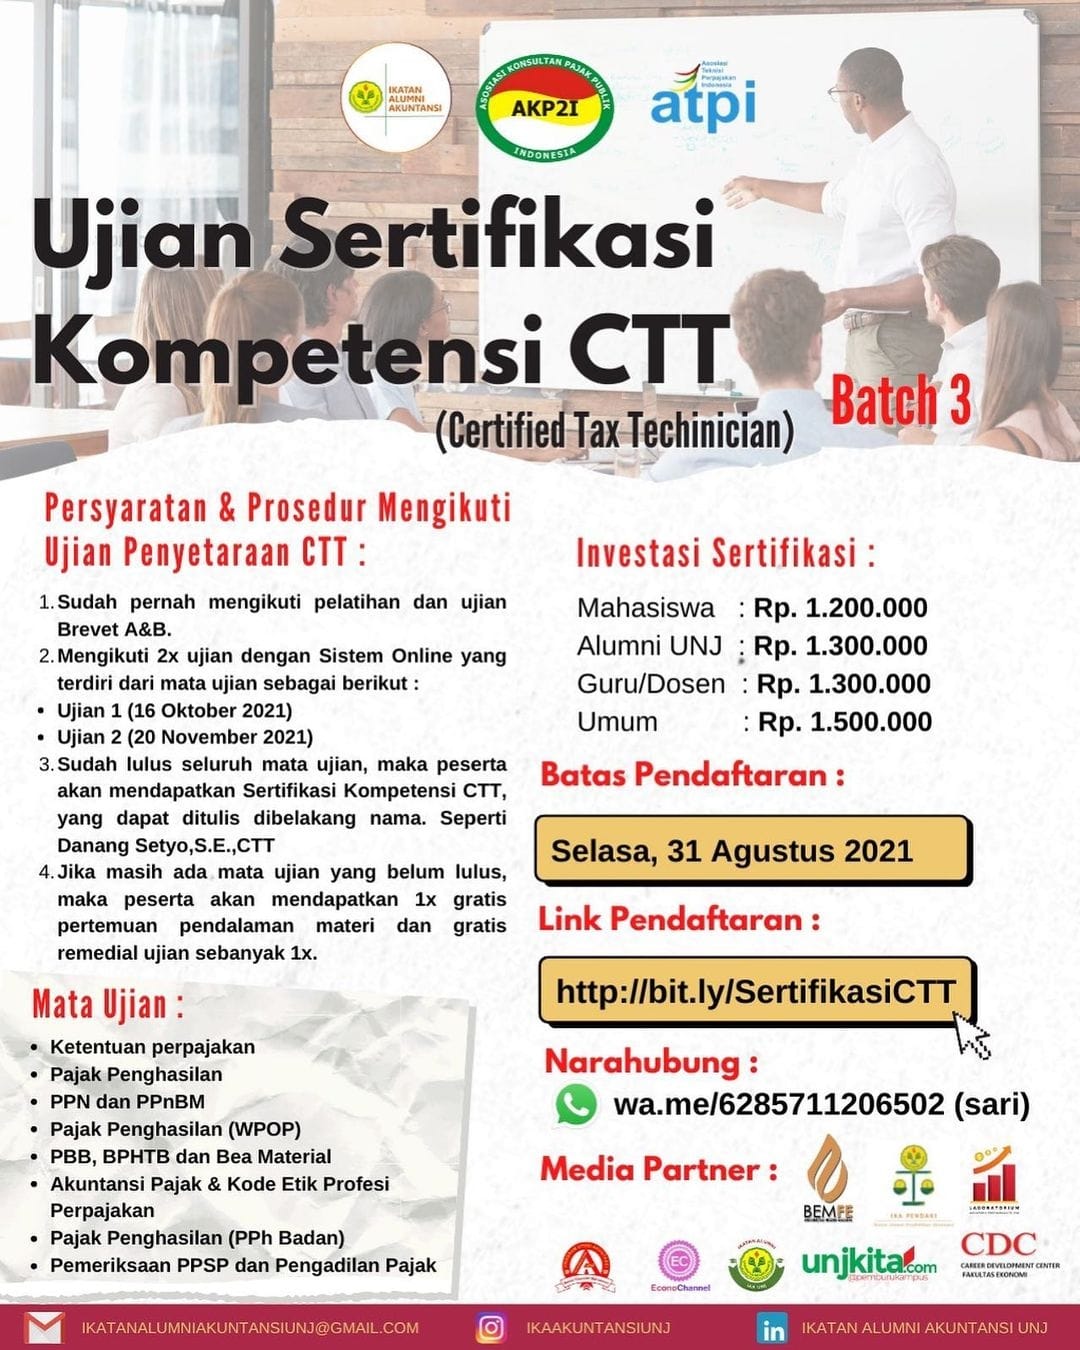 You are currently viewing Ujian Sertifikasi Kompetensi Certified Tax Technician (CTT) Batch 3